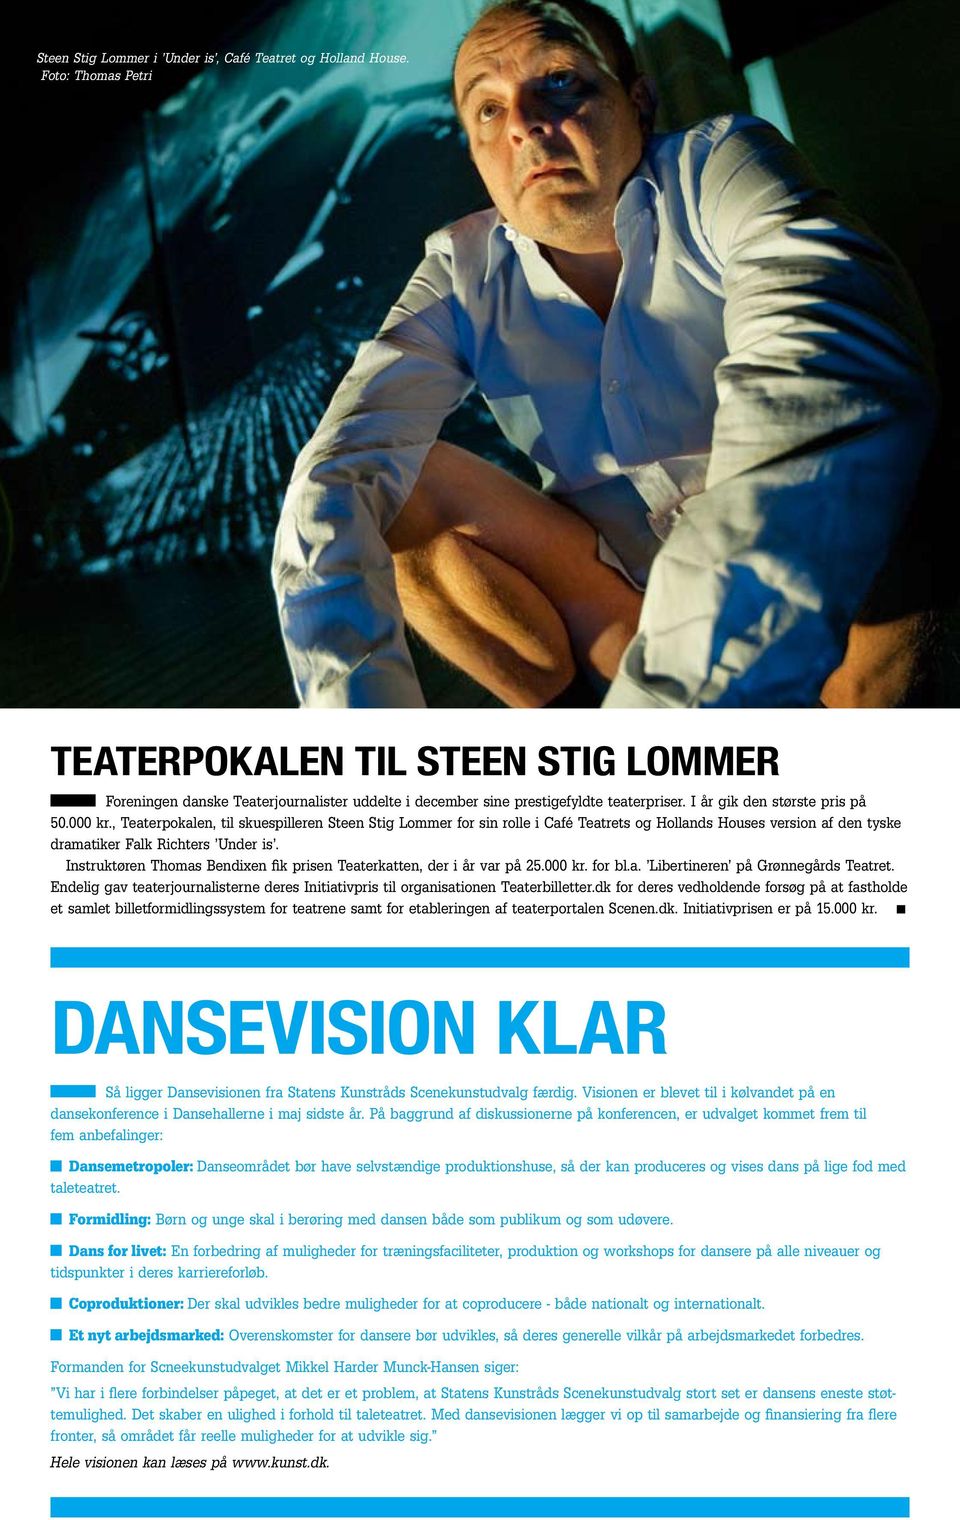 , Teaterpokalen, til skuespilleren Steen Stig Lommer for sin rolle i Café Teatrets og Hollands Houses version af den tyske dramatiker Falk Richters Under is.